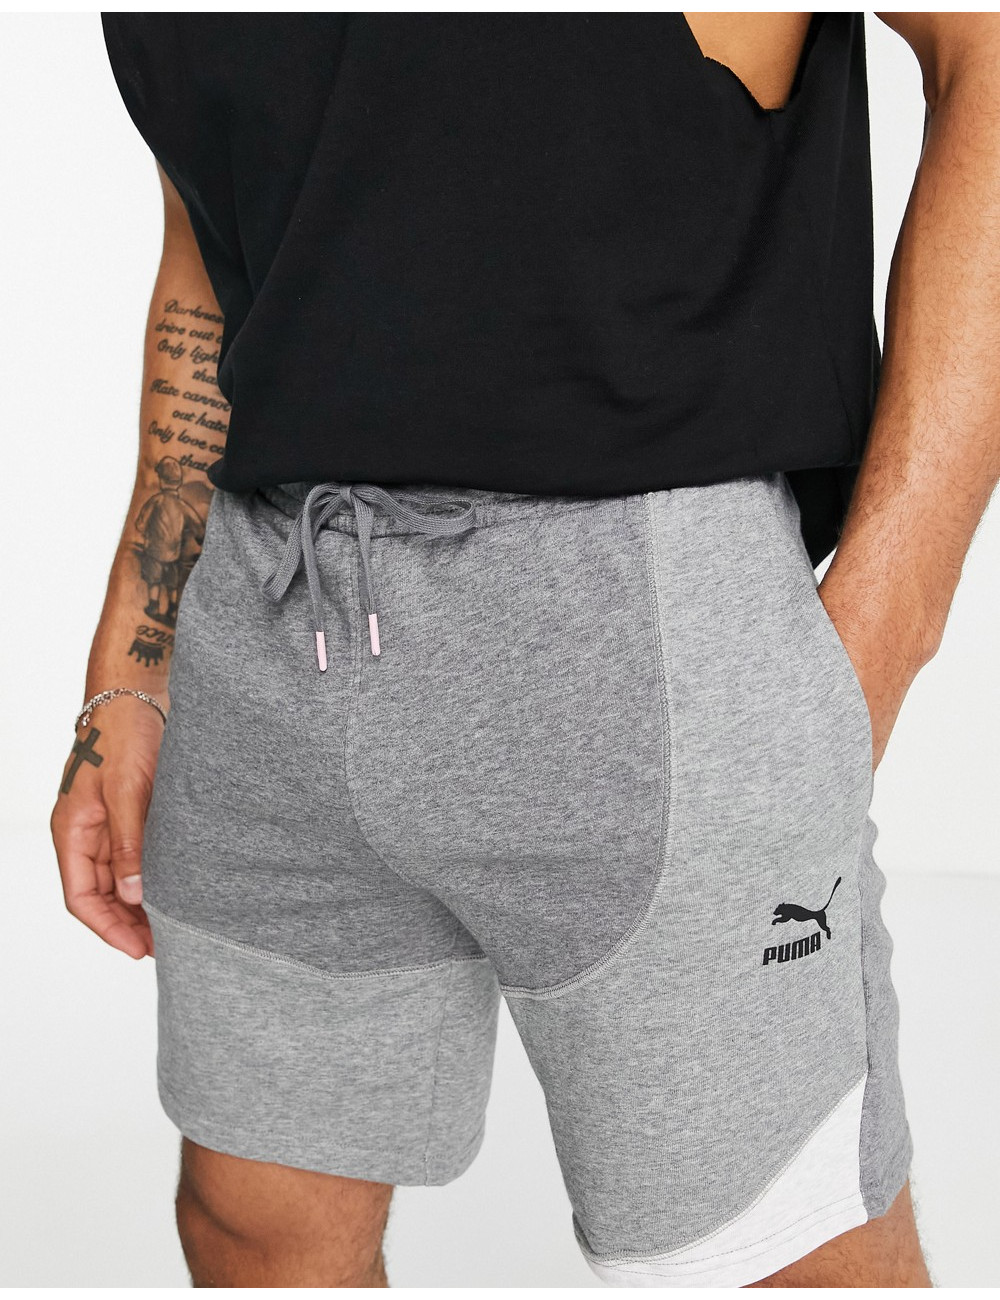 Puma convey shorts in grey...